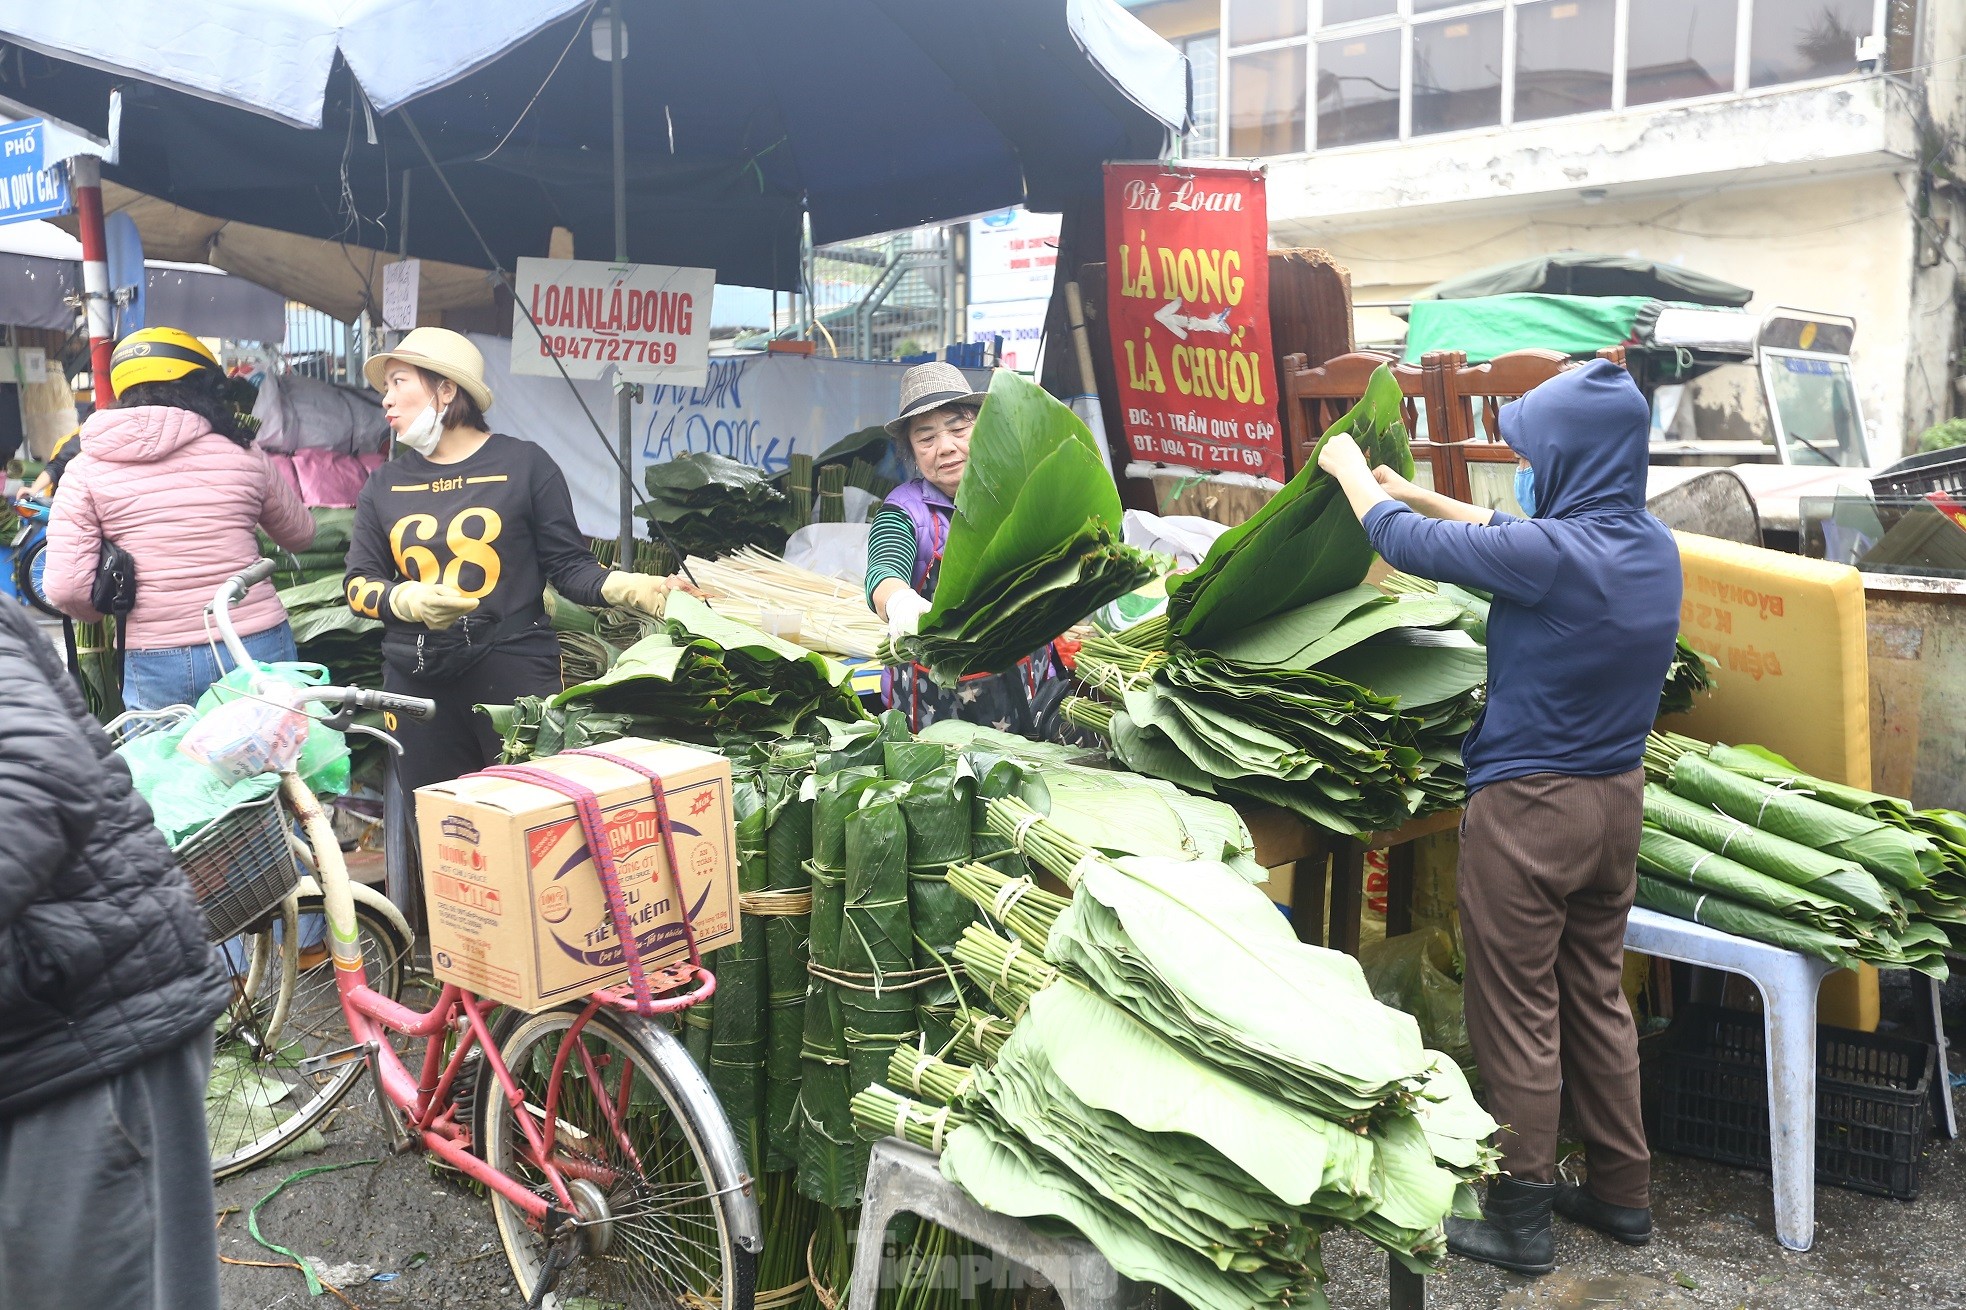 Chợ lá dong lâu đời nhất Hà Nội: Ngày bán hàng vạn lá, thu về hàng chục triệu - Ảnh 2.